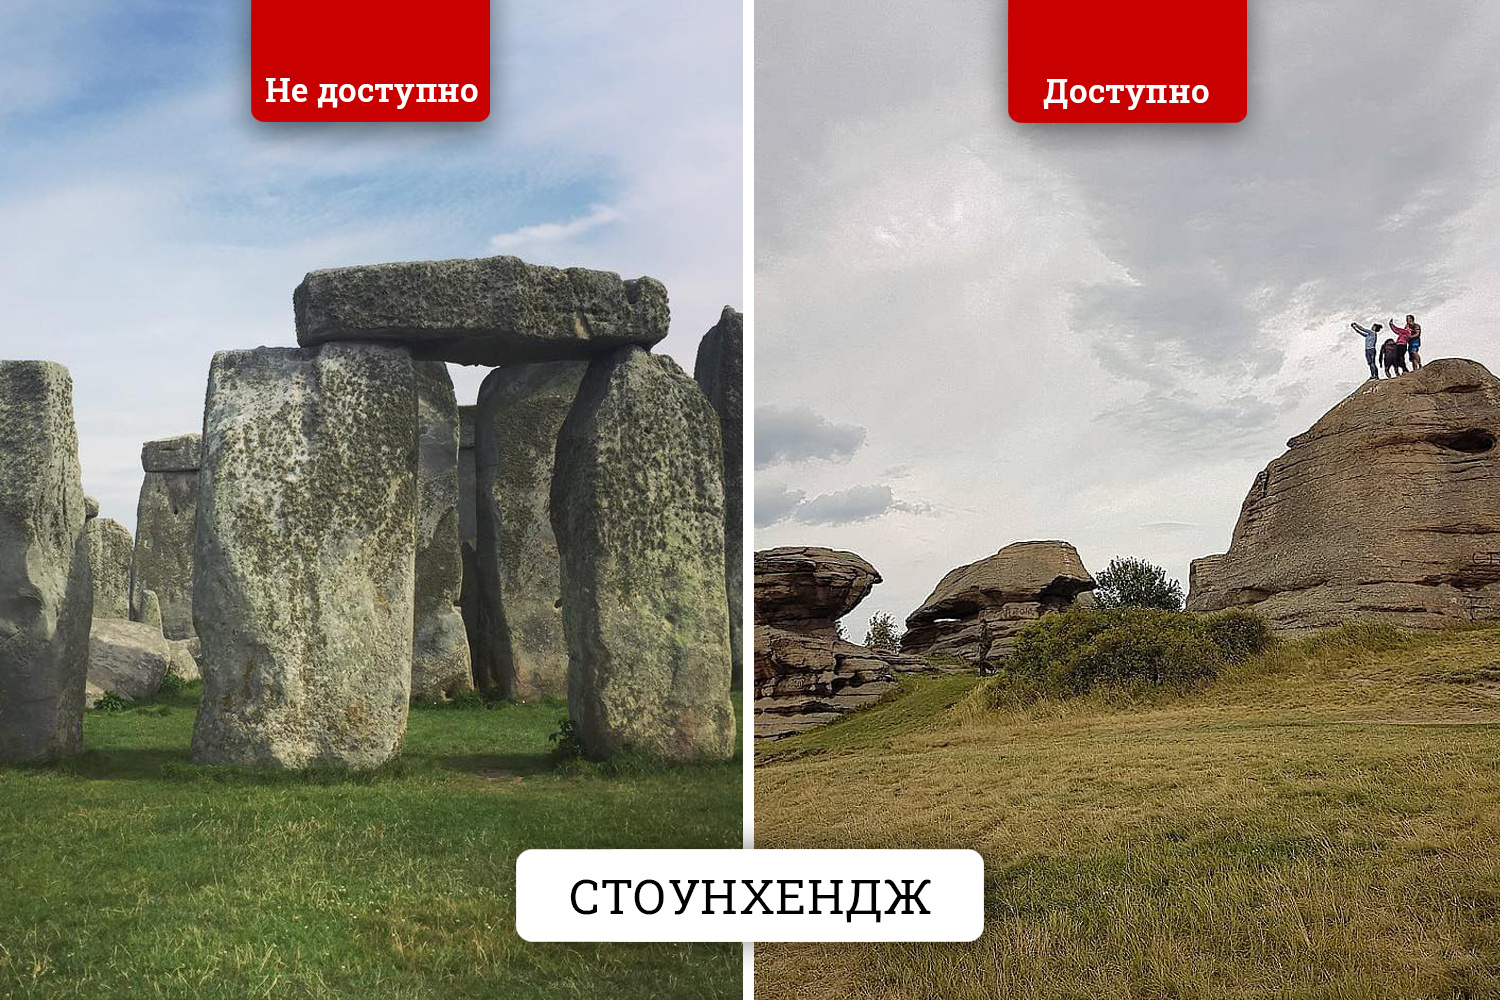 Мегалиты — сооружения из огромных каменных глыб — не редкость для Урала